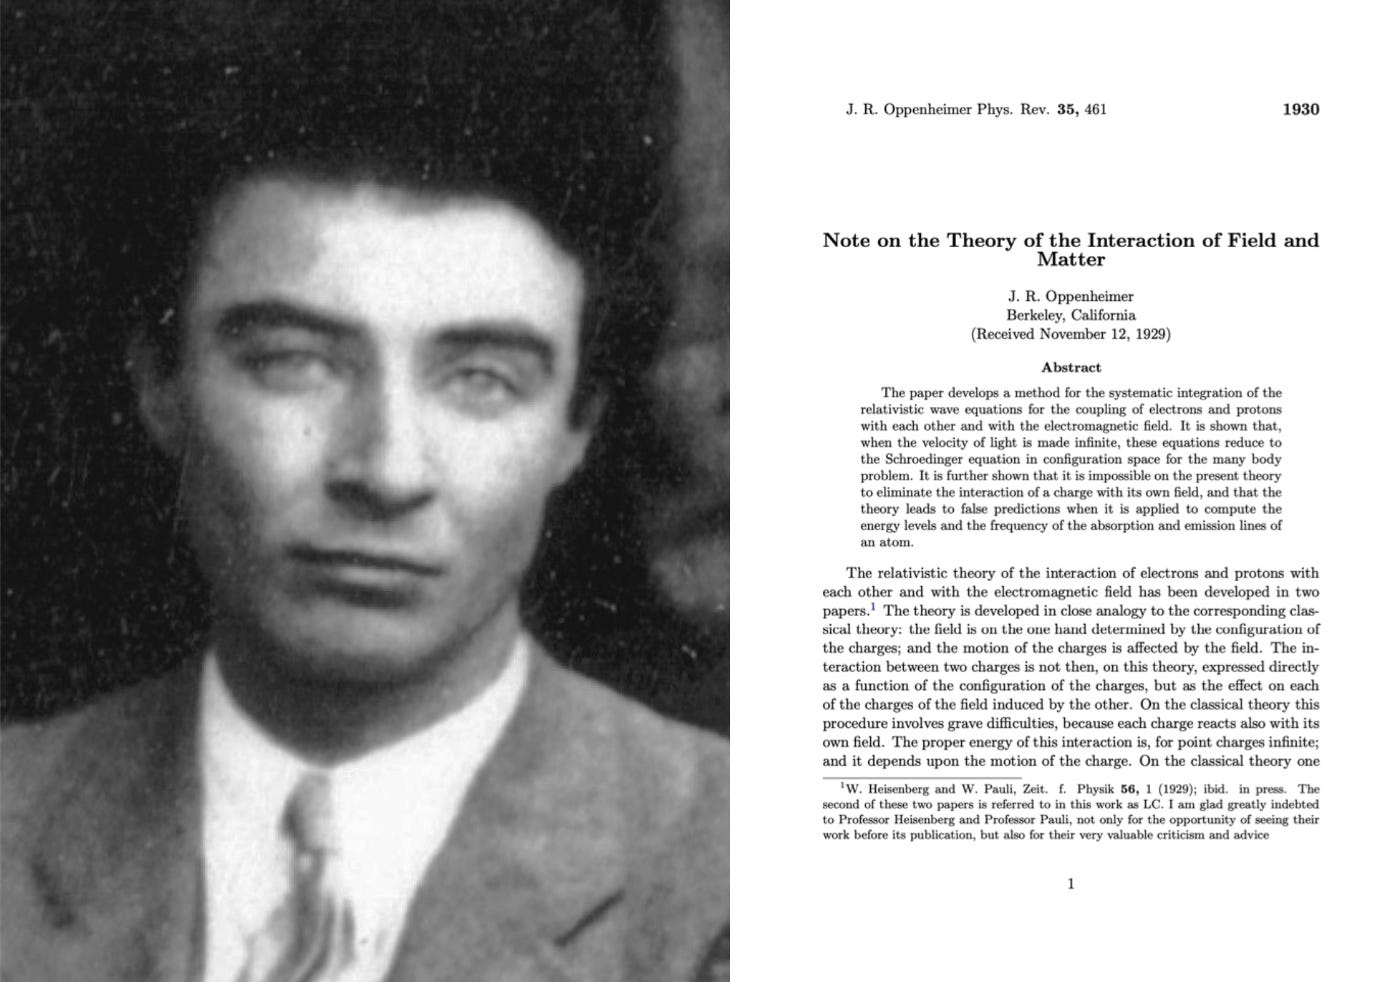 Oppenheimer in 1931